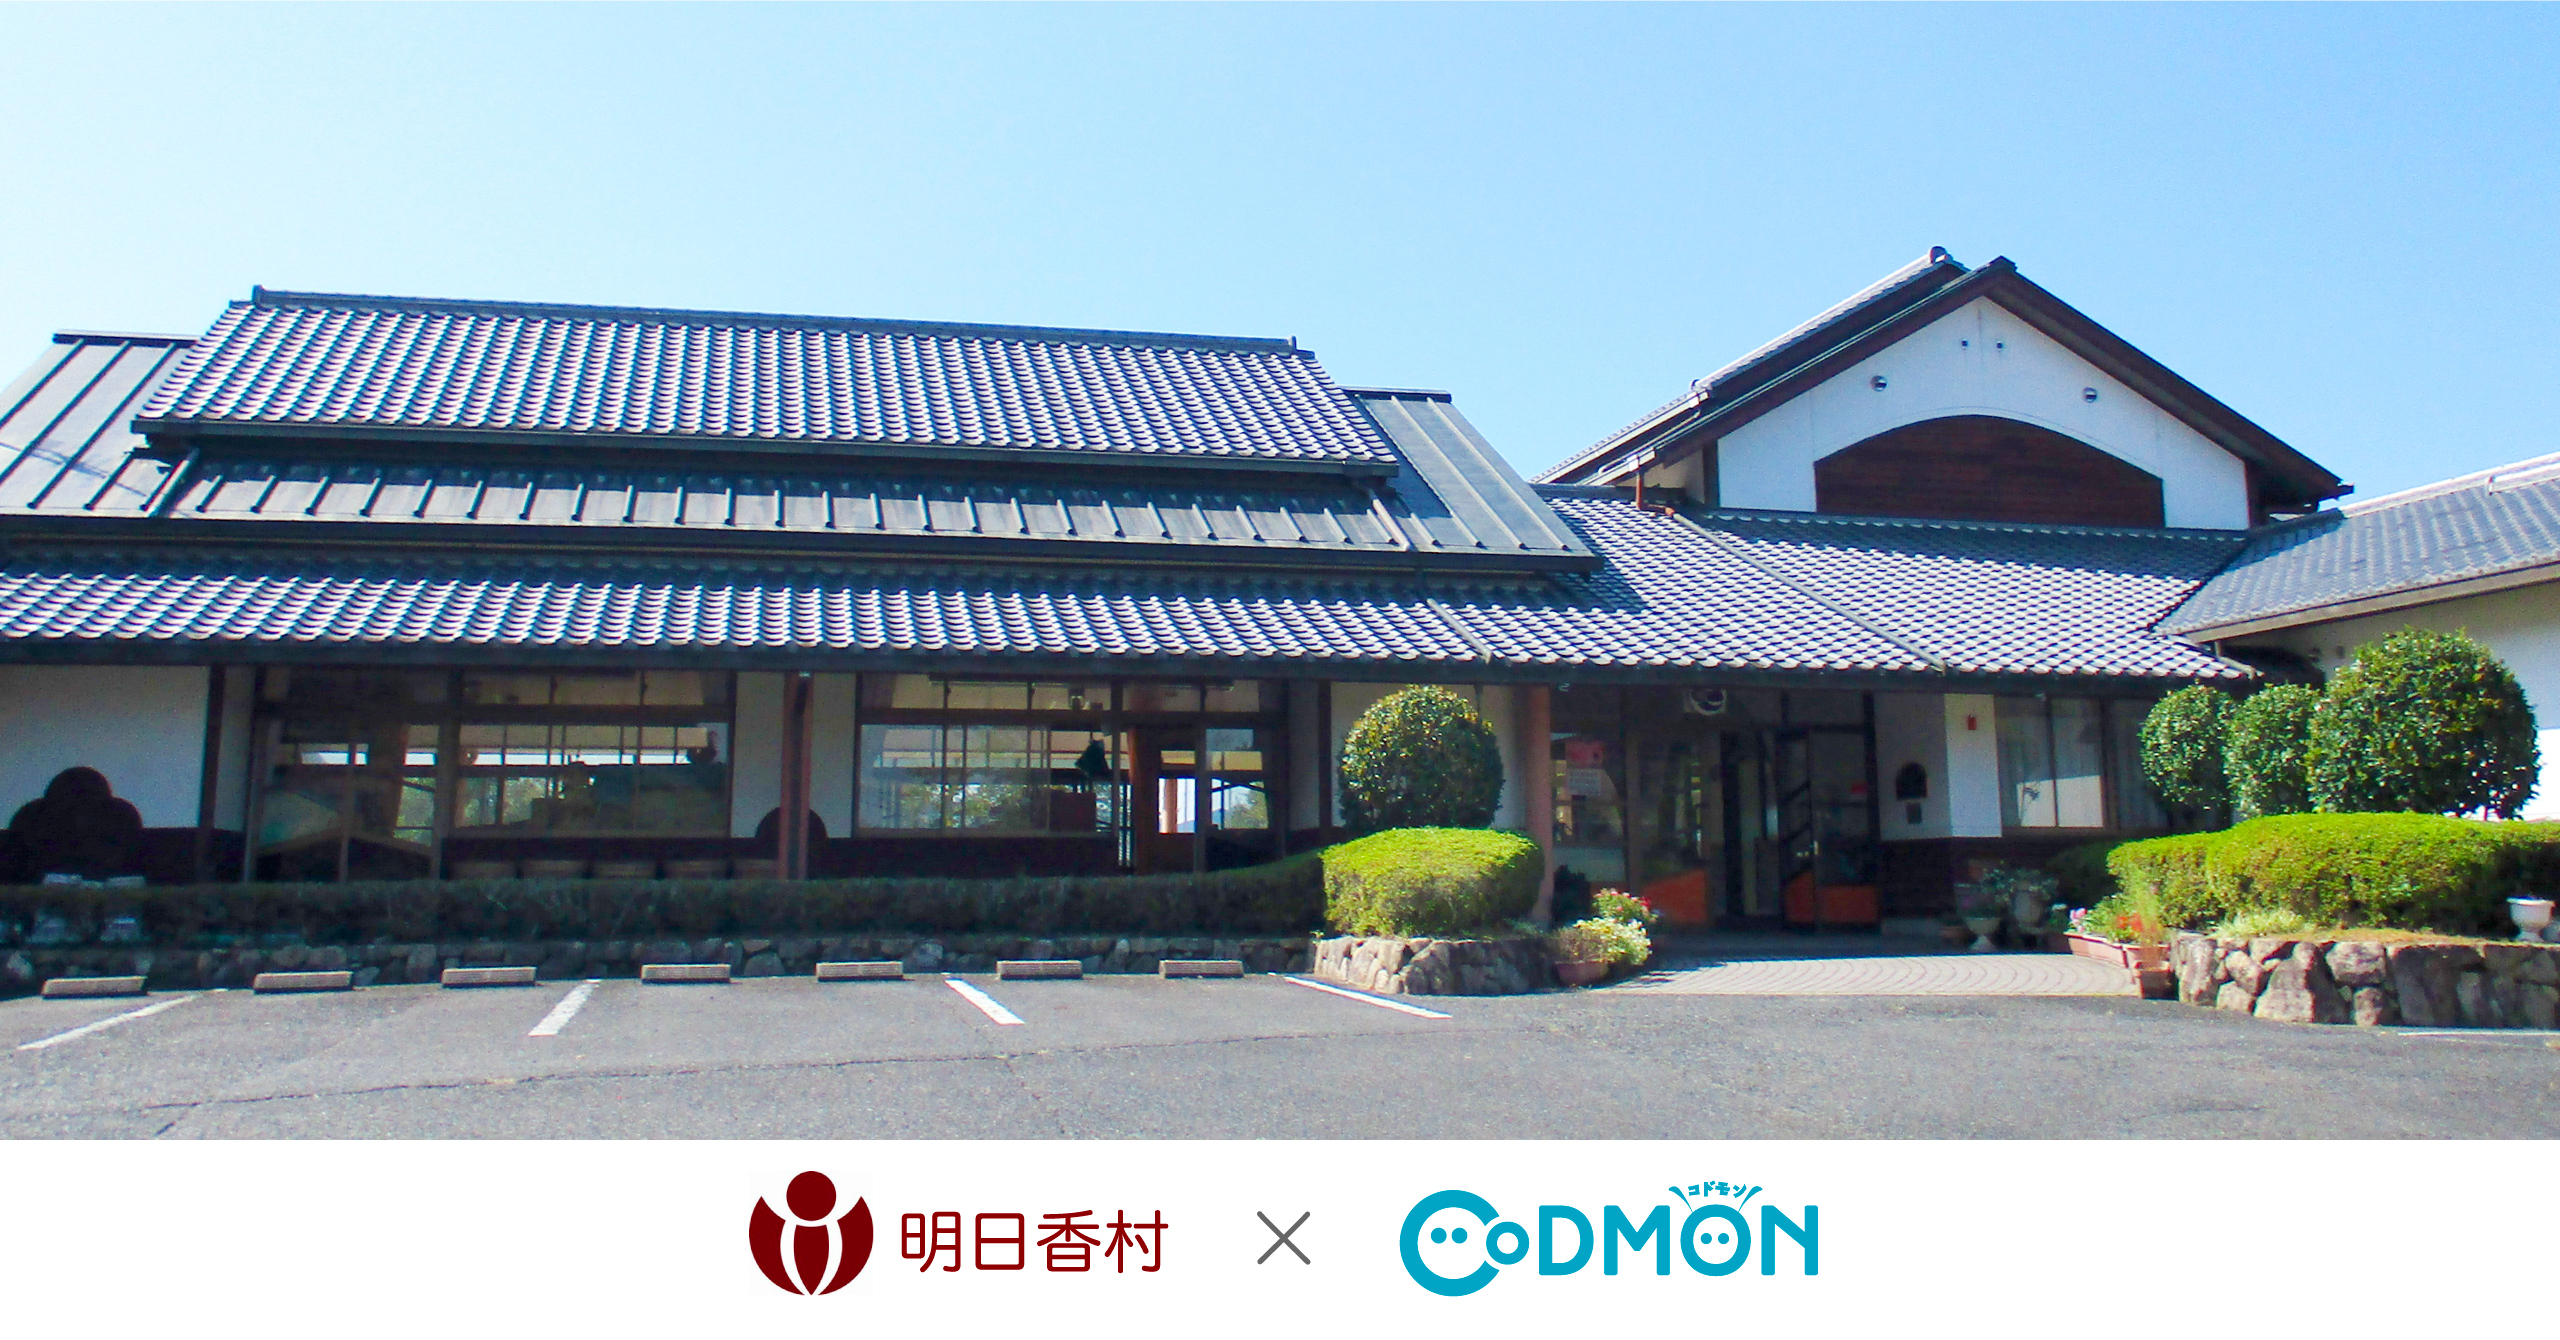 コドモン、奈良県明日香村の幼稚園において 保育ICTシステム「CoDMON」導入